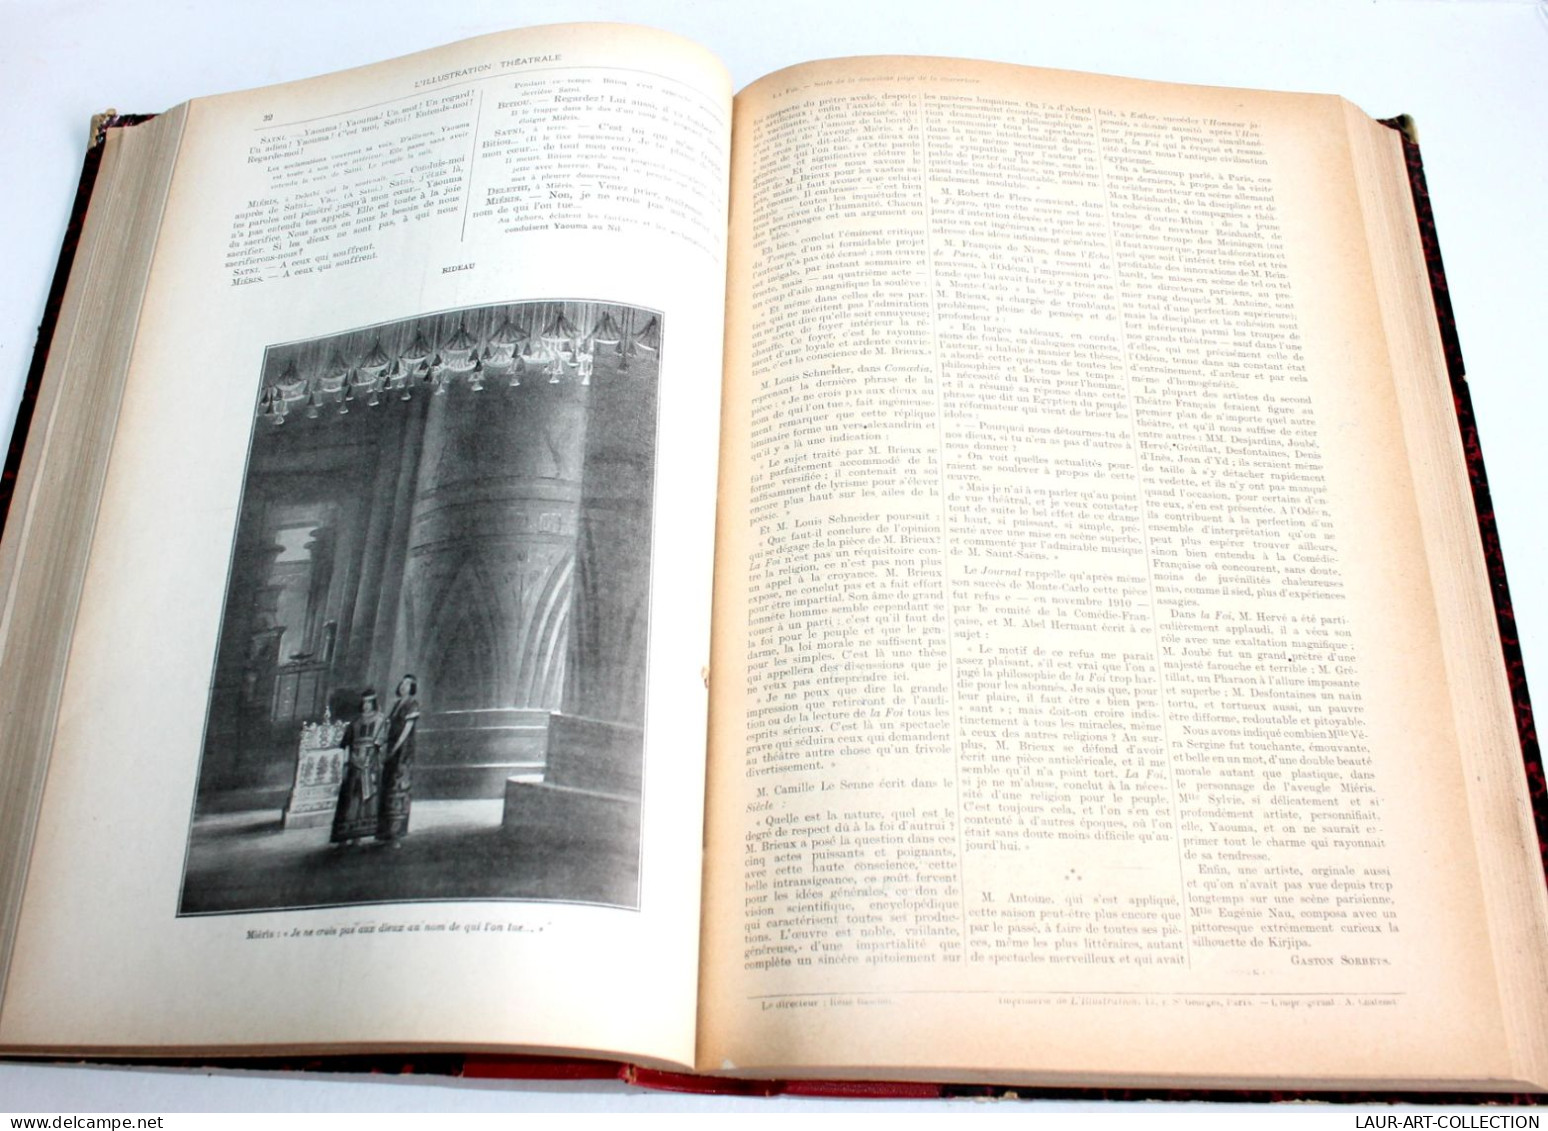 L'ILLUSTRATION THEATRALE 8e ANNEE 1912 N°212 A 227 JOURNAL ACTUALITES DRAMATIQUE / ANCIEN LIVRE XIXe SIECLE (1803.212) - Autores Franceses